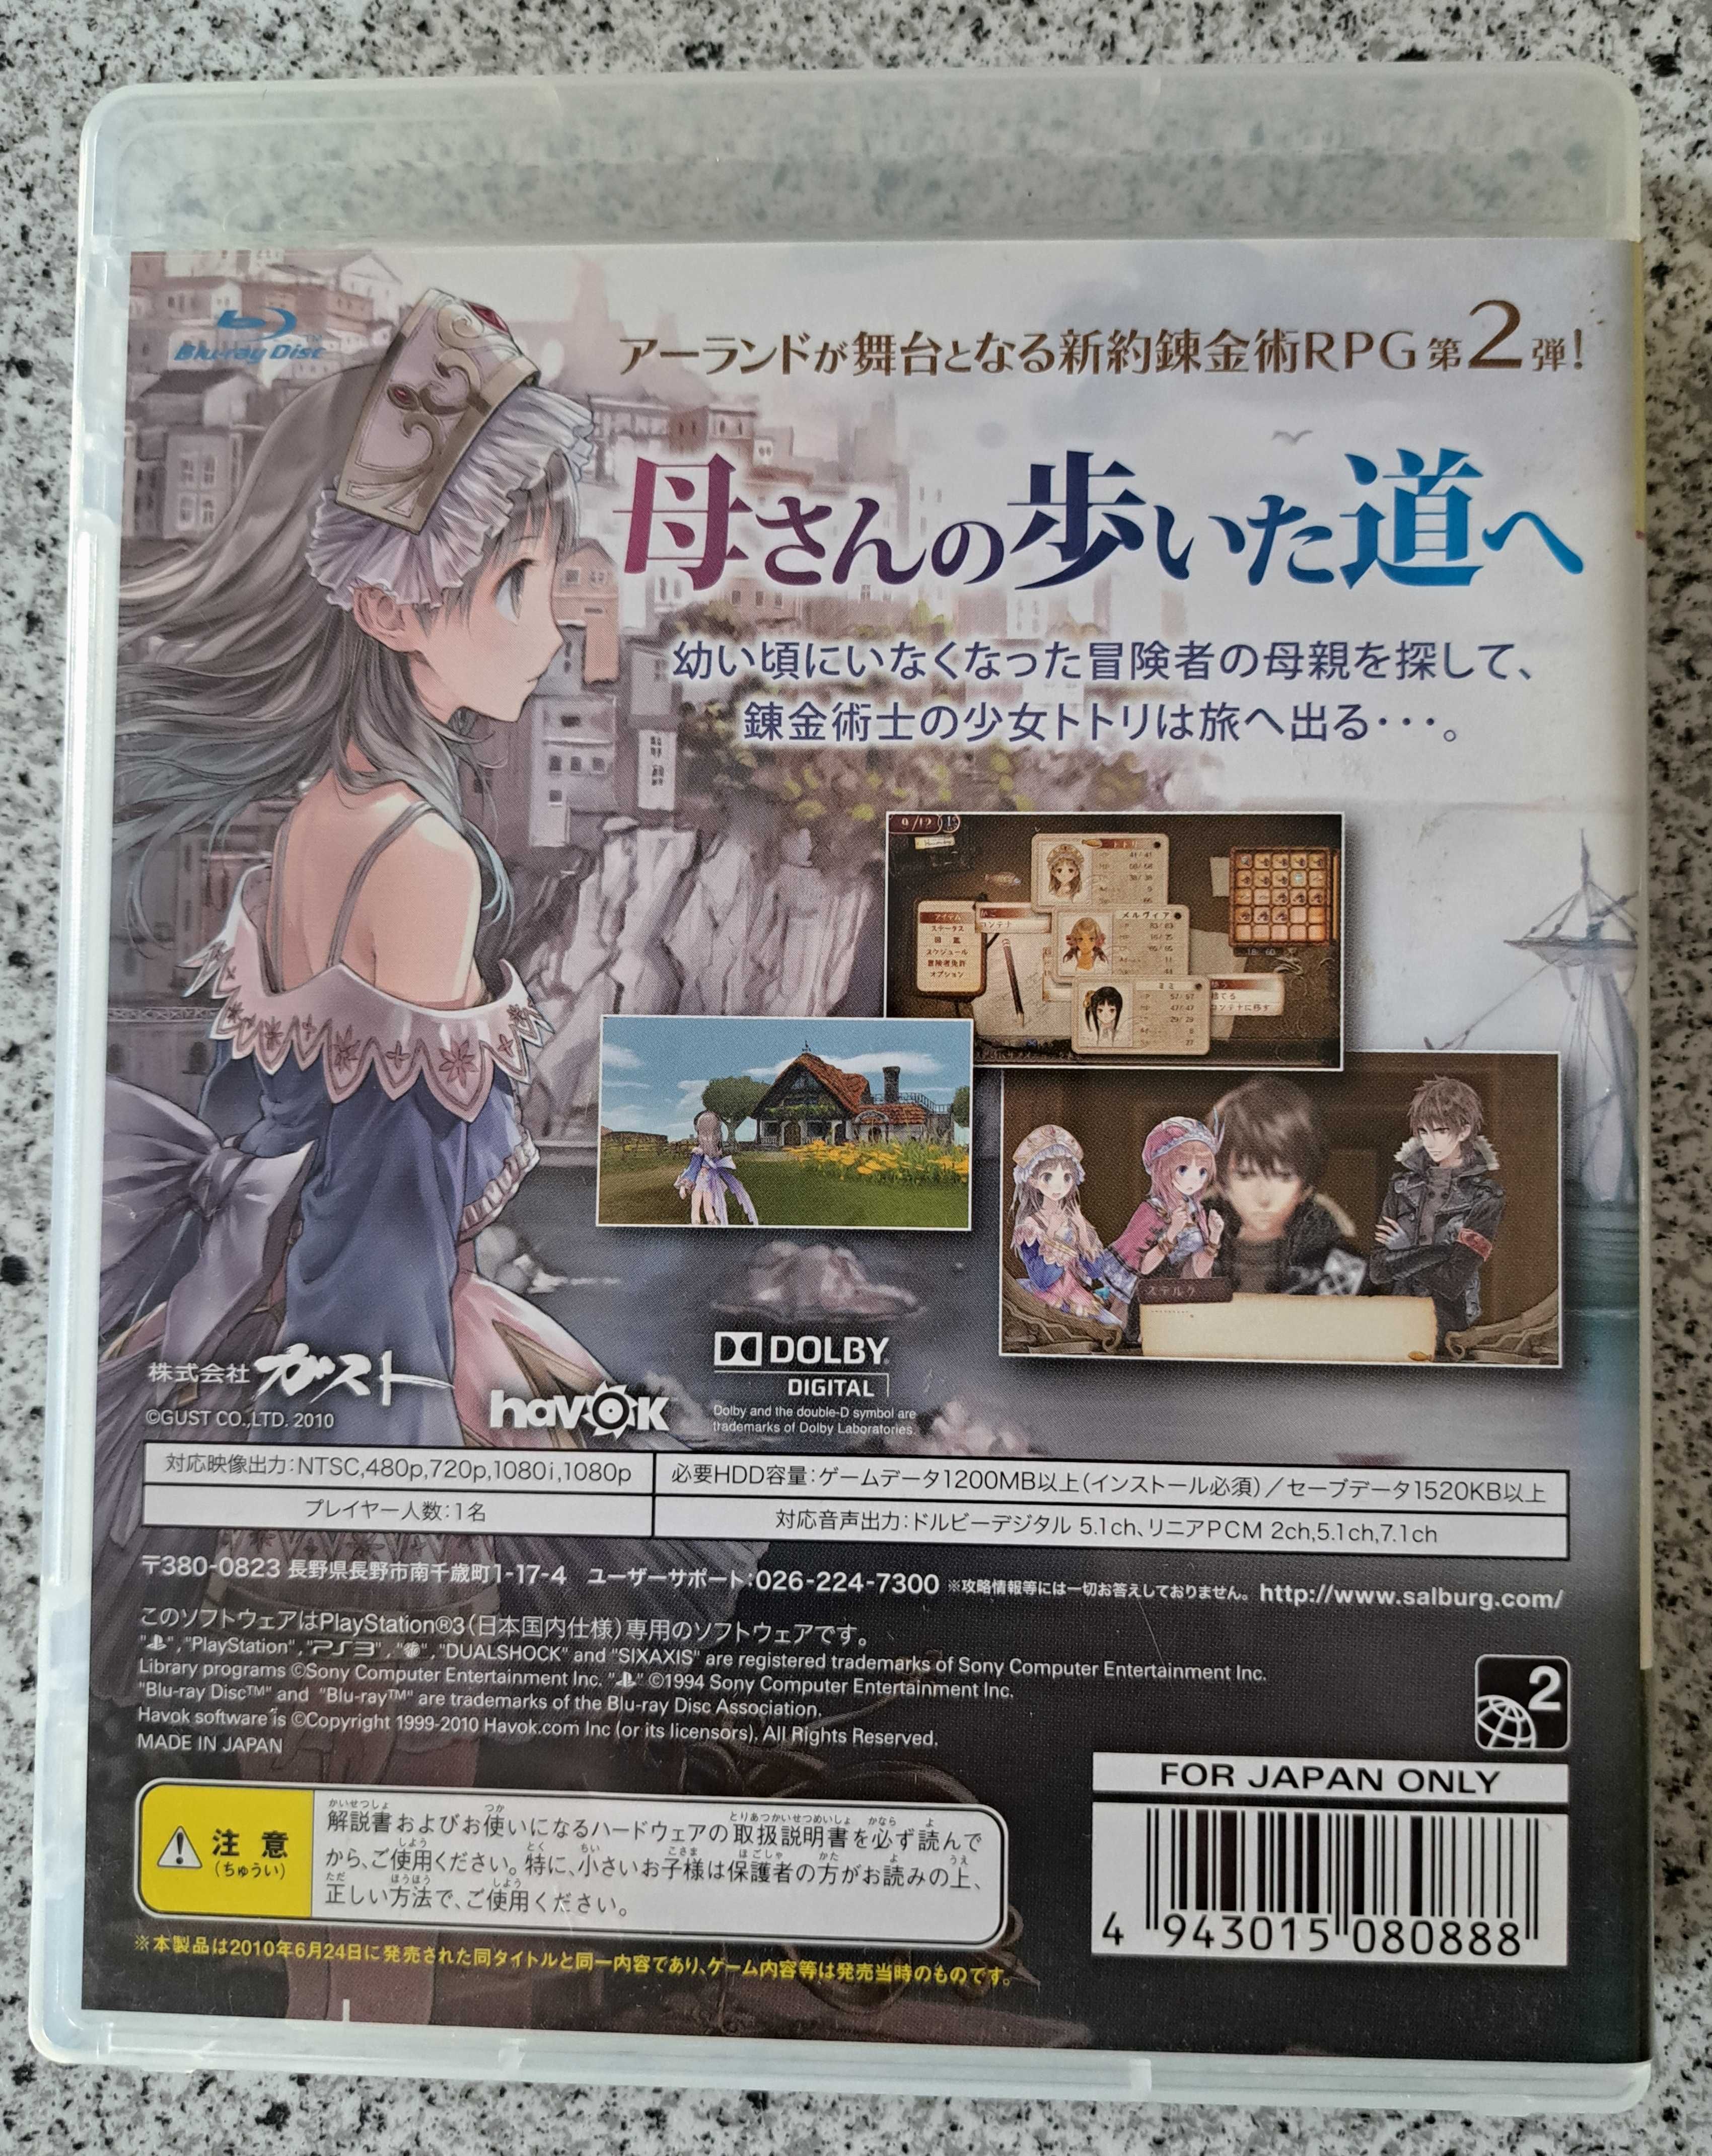 Gra Atelier Totori, PS3, import Japonia